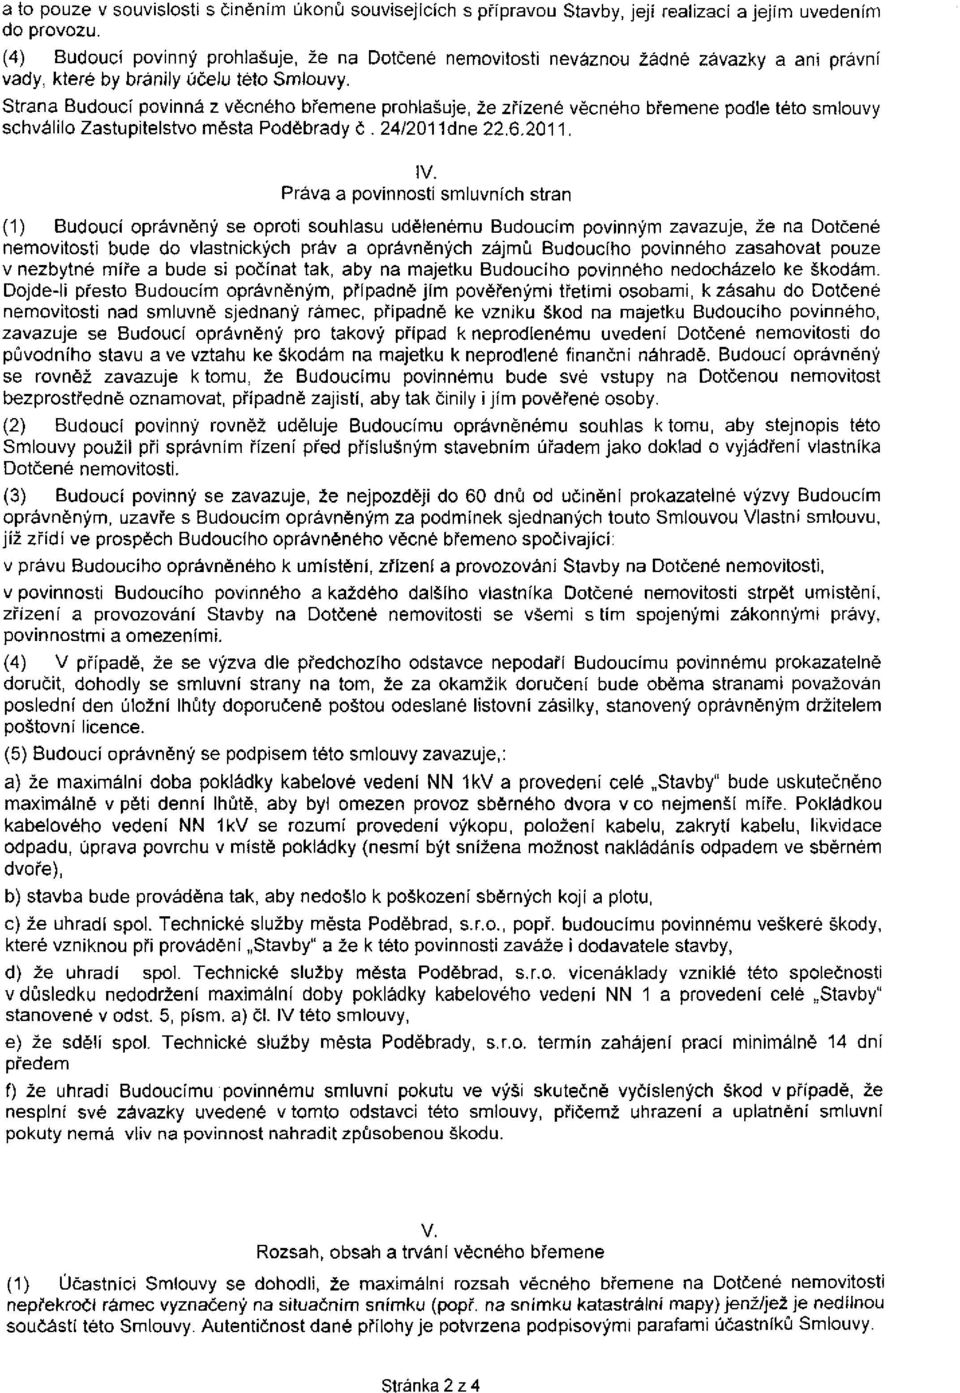 Strana Budoucí povinná z věcného břemene prohlašuje, že zřízené věcného břemene podle této smlouvy schválilo Zastupitelstvo města Poděbrady č. 24/2011dne 22.6.2011, IV.